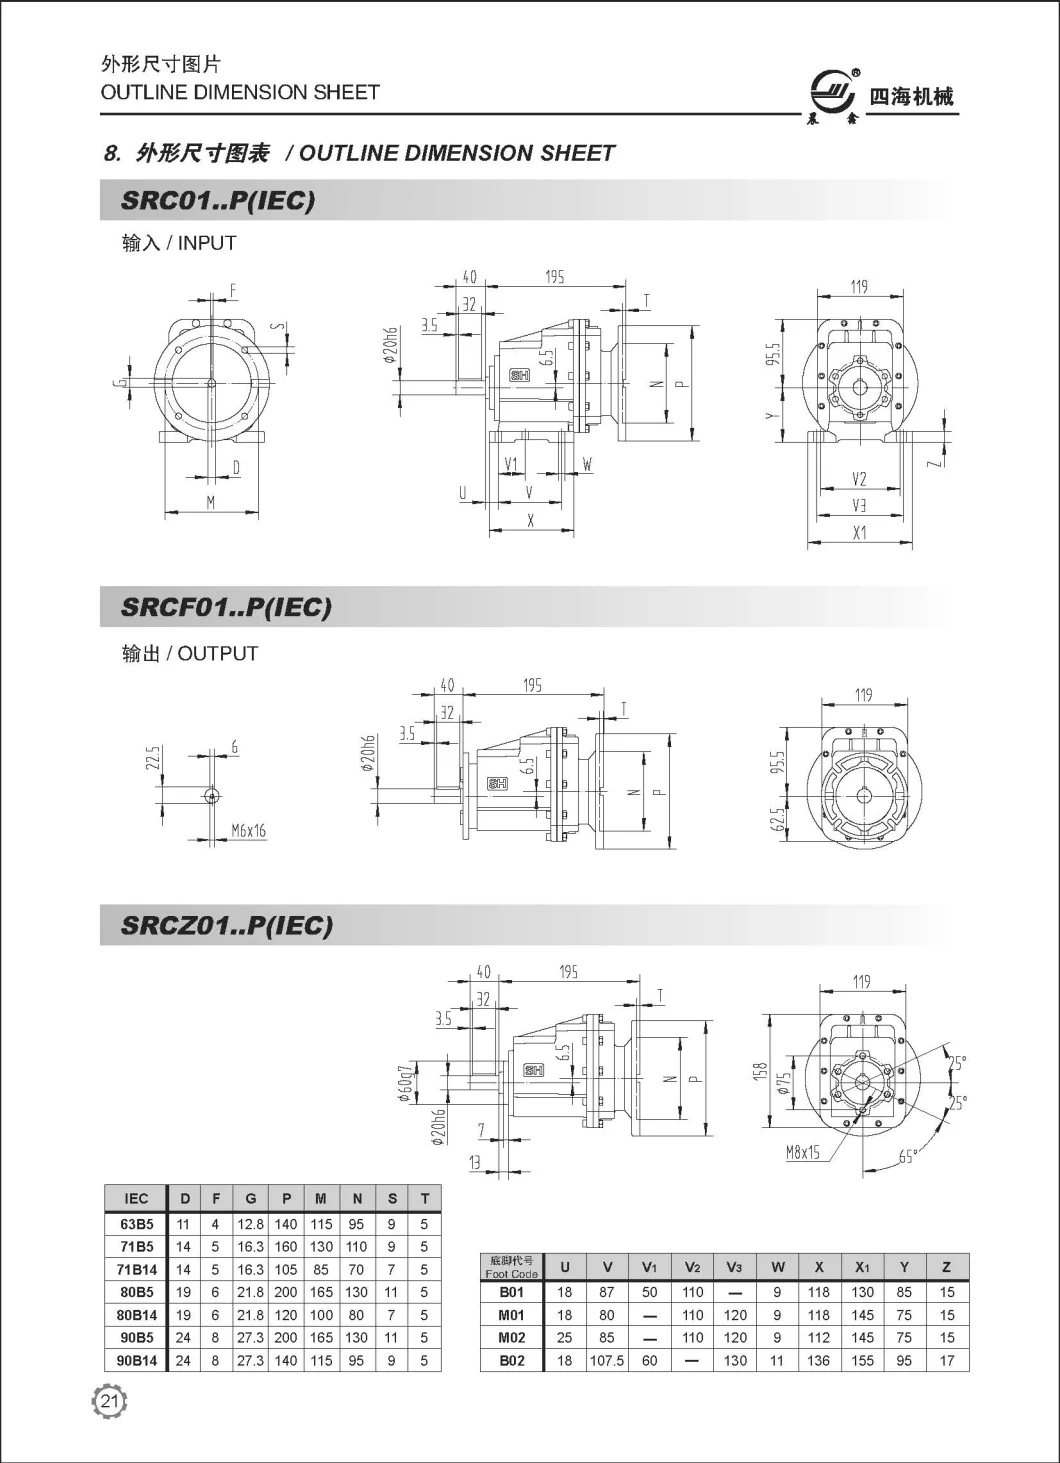 Src Helical Gearbox, Helical Gearbox Cmg, Helical Gear Units